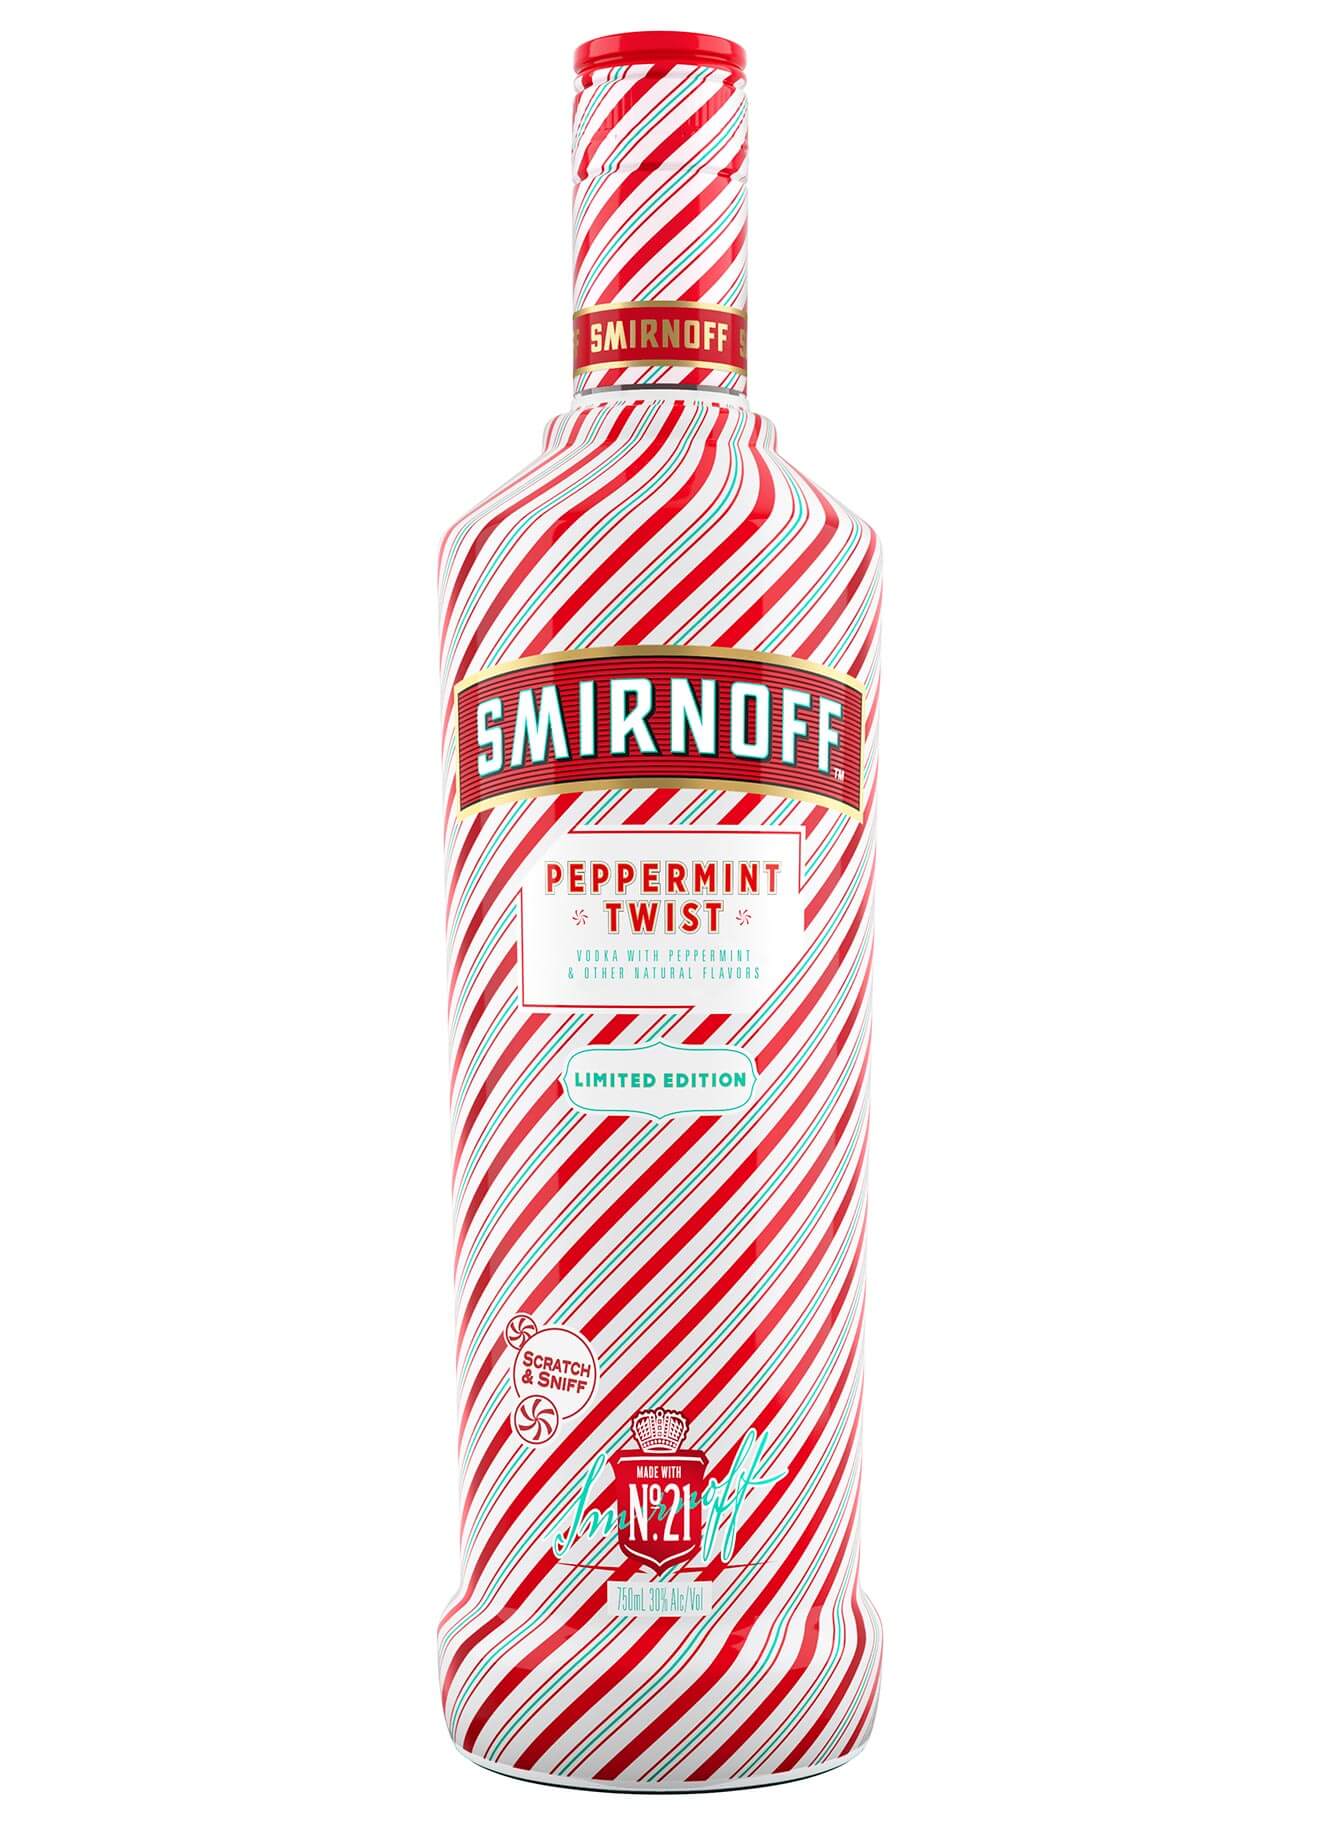 Smirnoff Peppermint Twist bottle